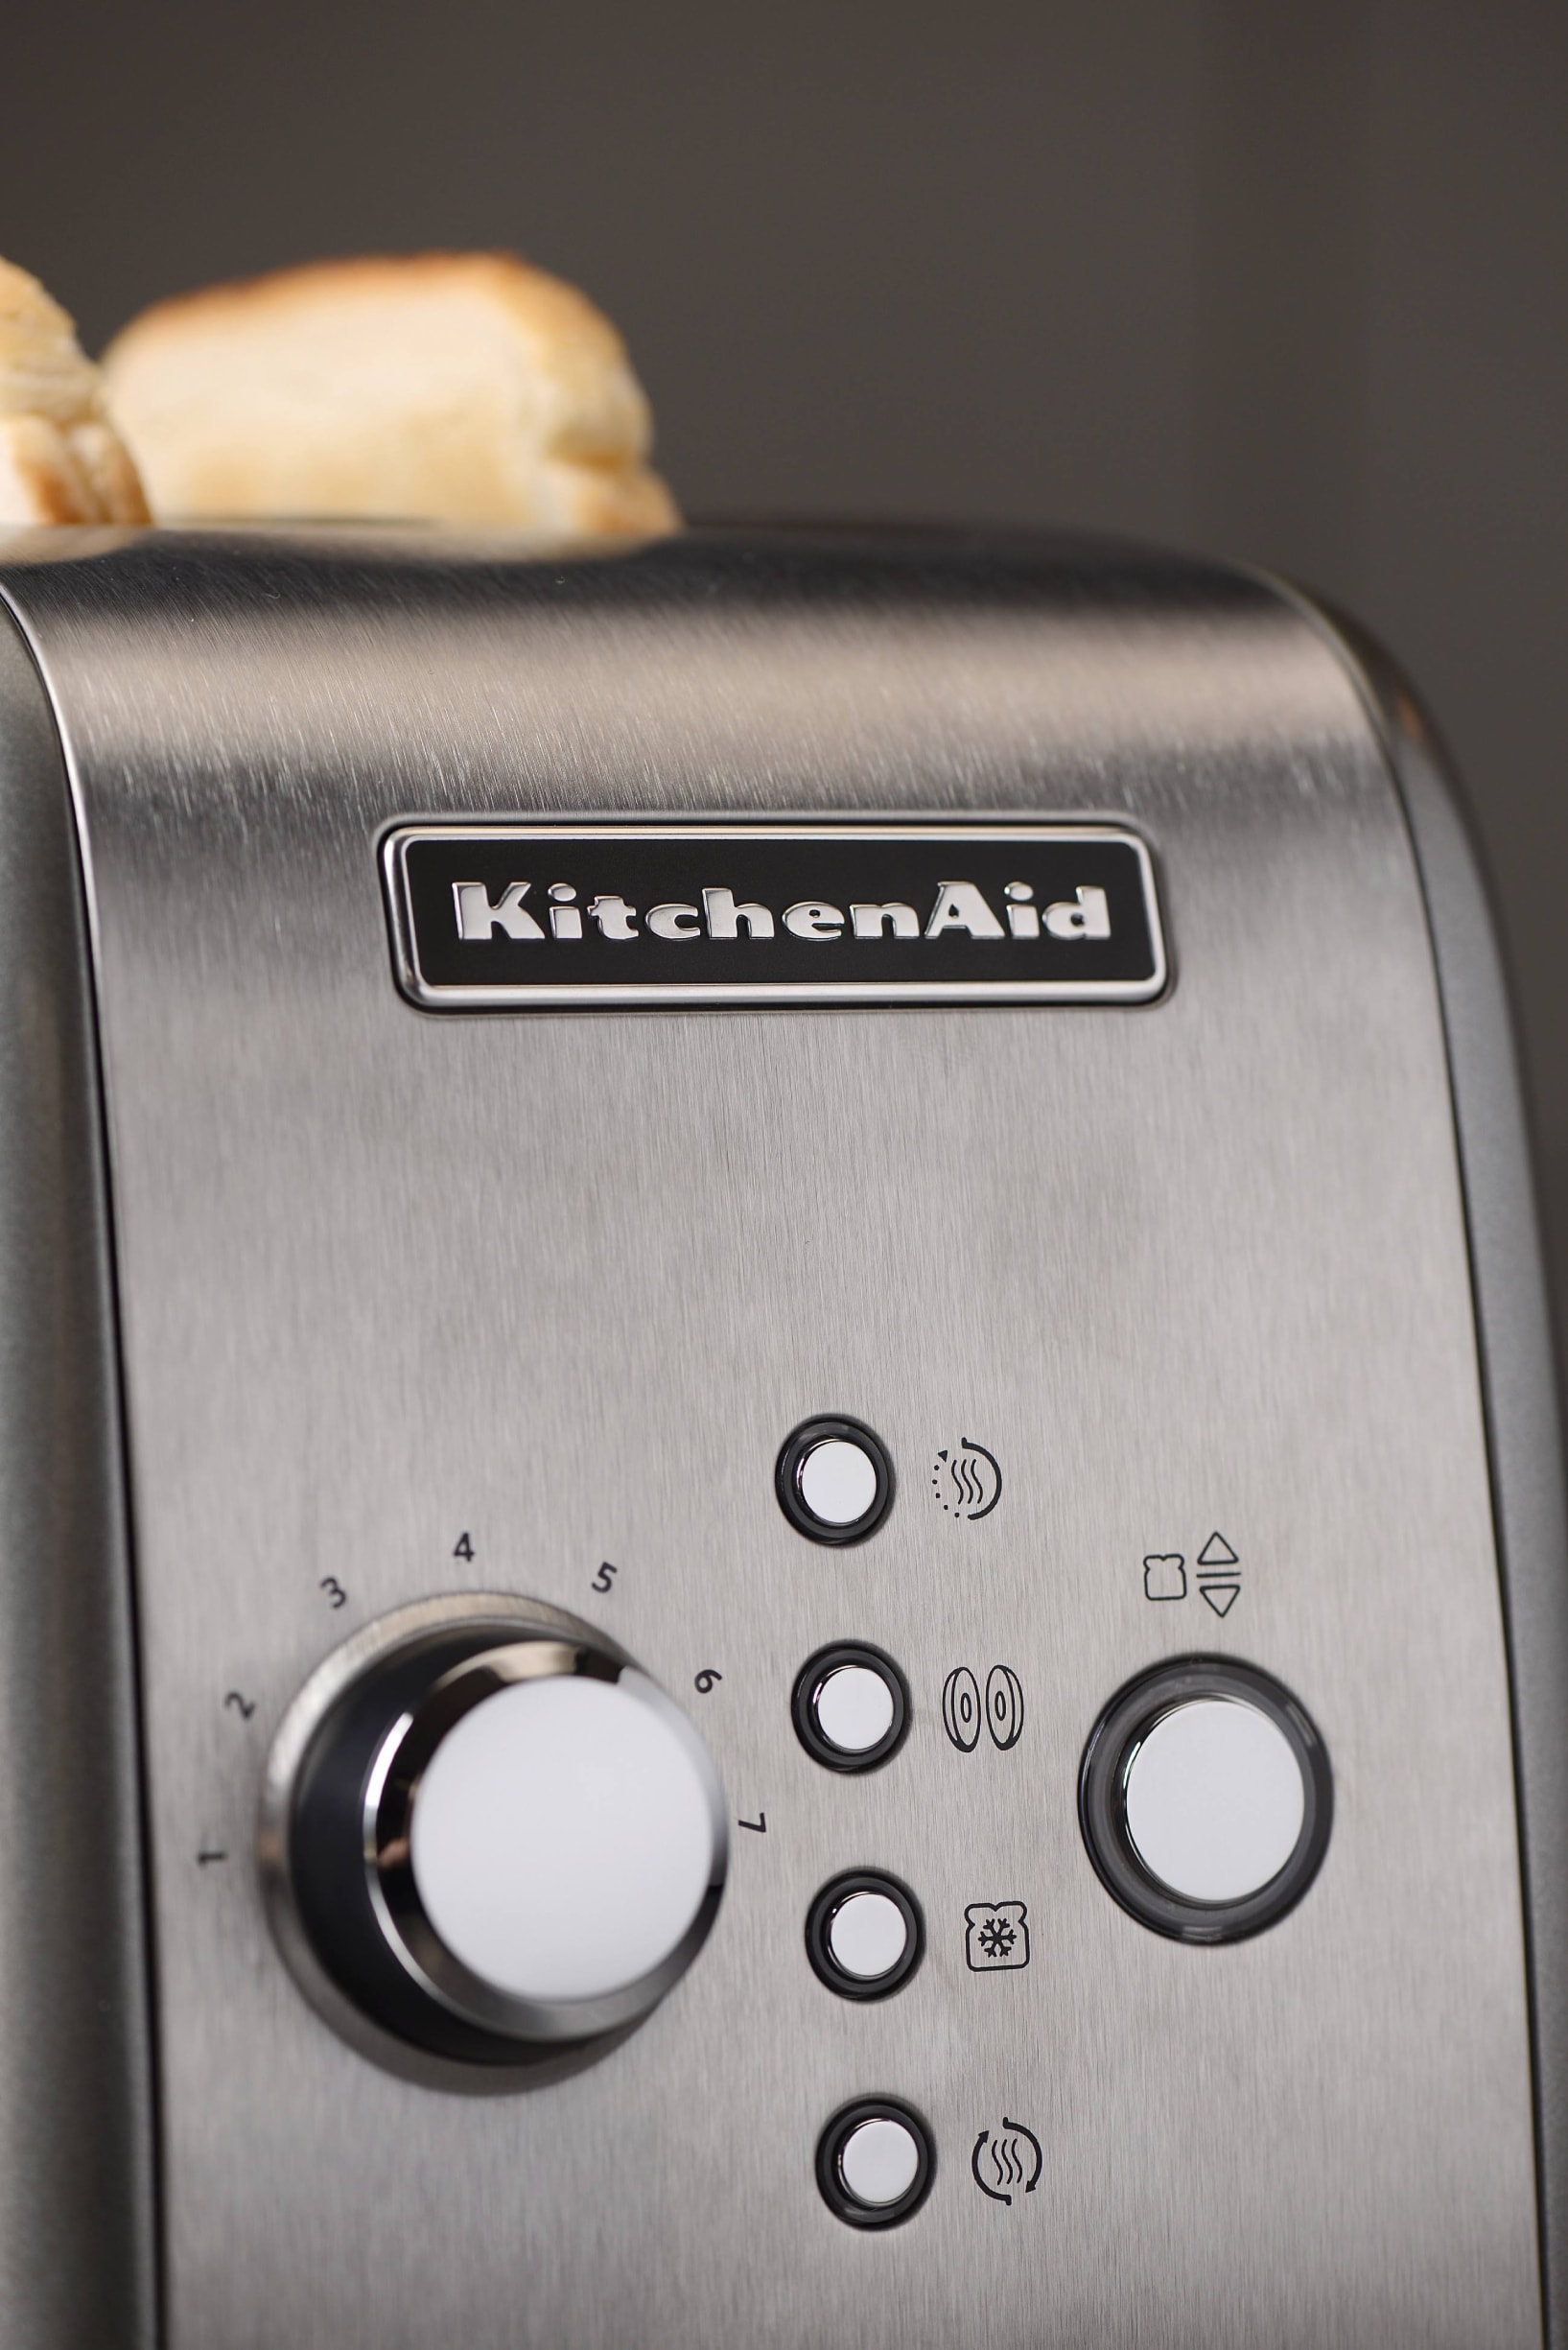 KitchenAid 5KMT221ESX grille-pain 2 part(s) 1100 W Argent